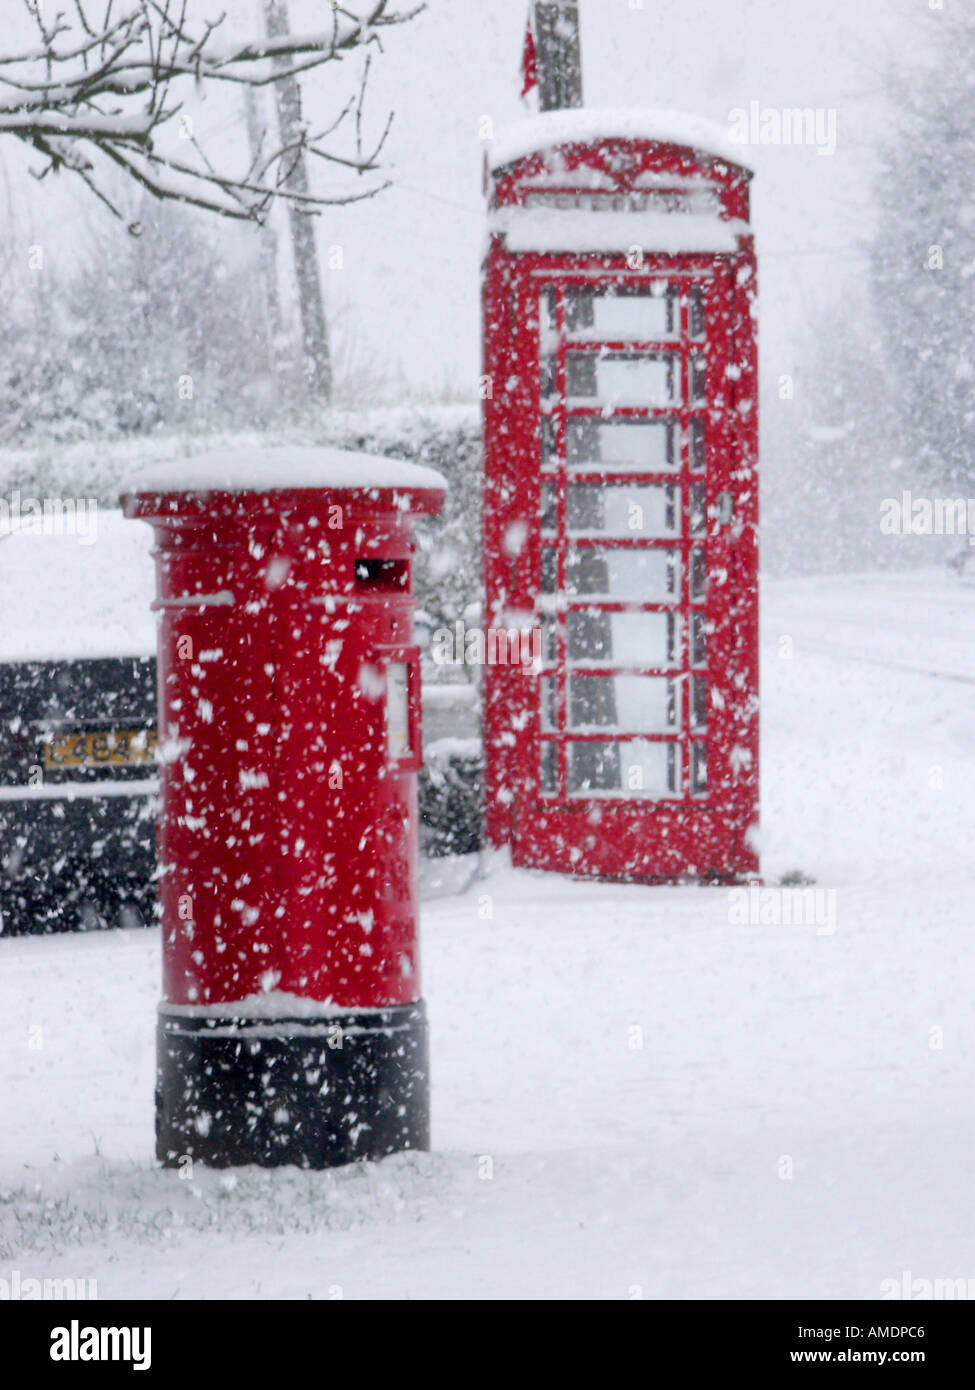 Village rural scène de rue hiver & flocons tomber autour de British Telecom téléphone rouge fort et royal mail pilier lettre fort Essex England UK Banque D'Images